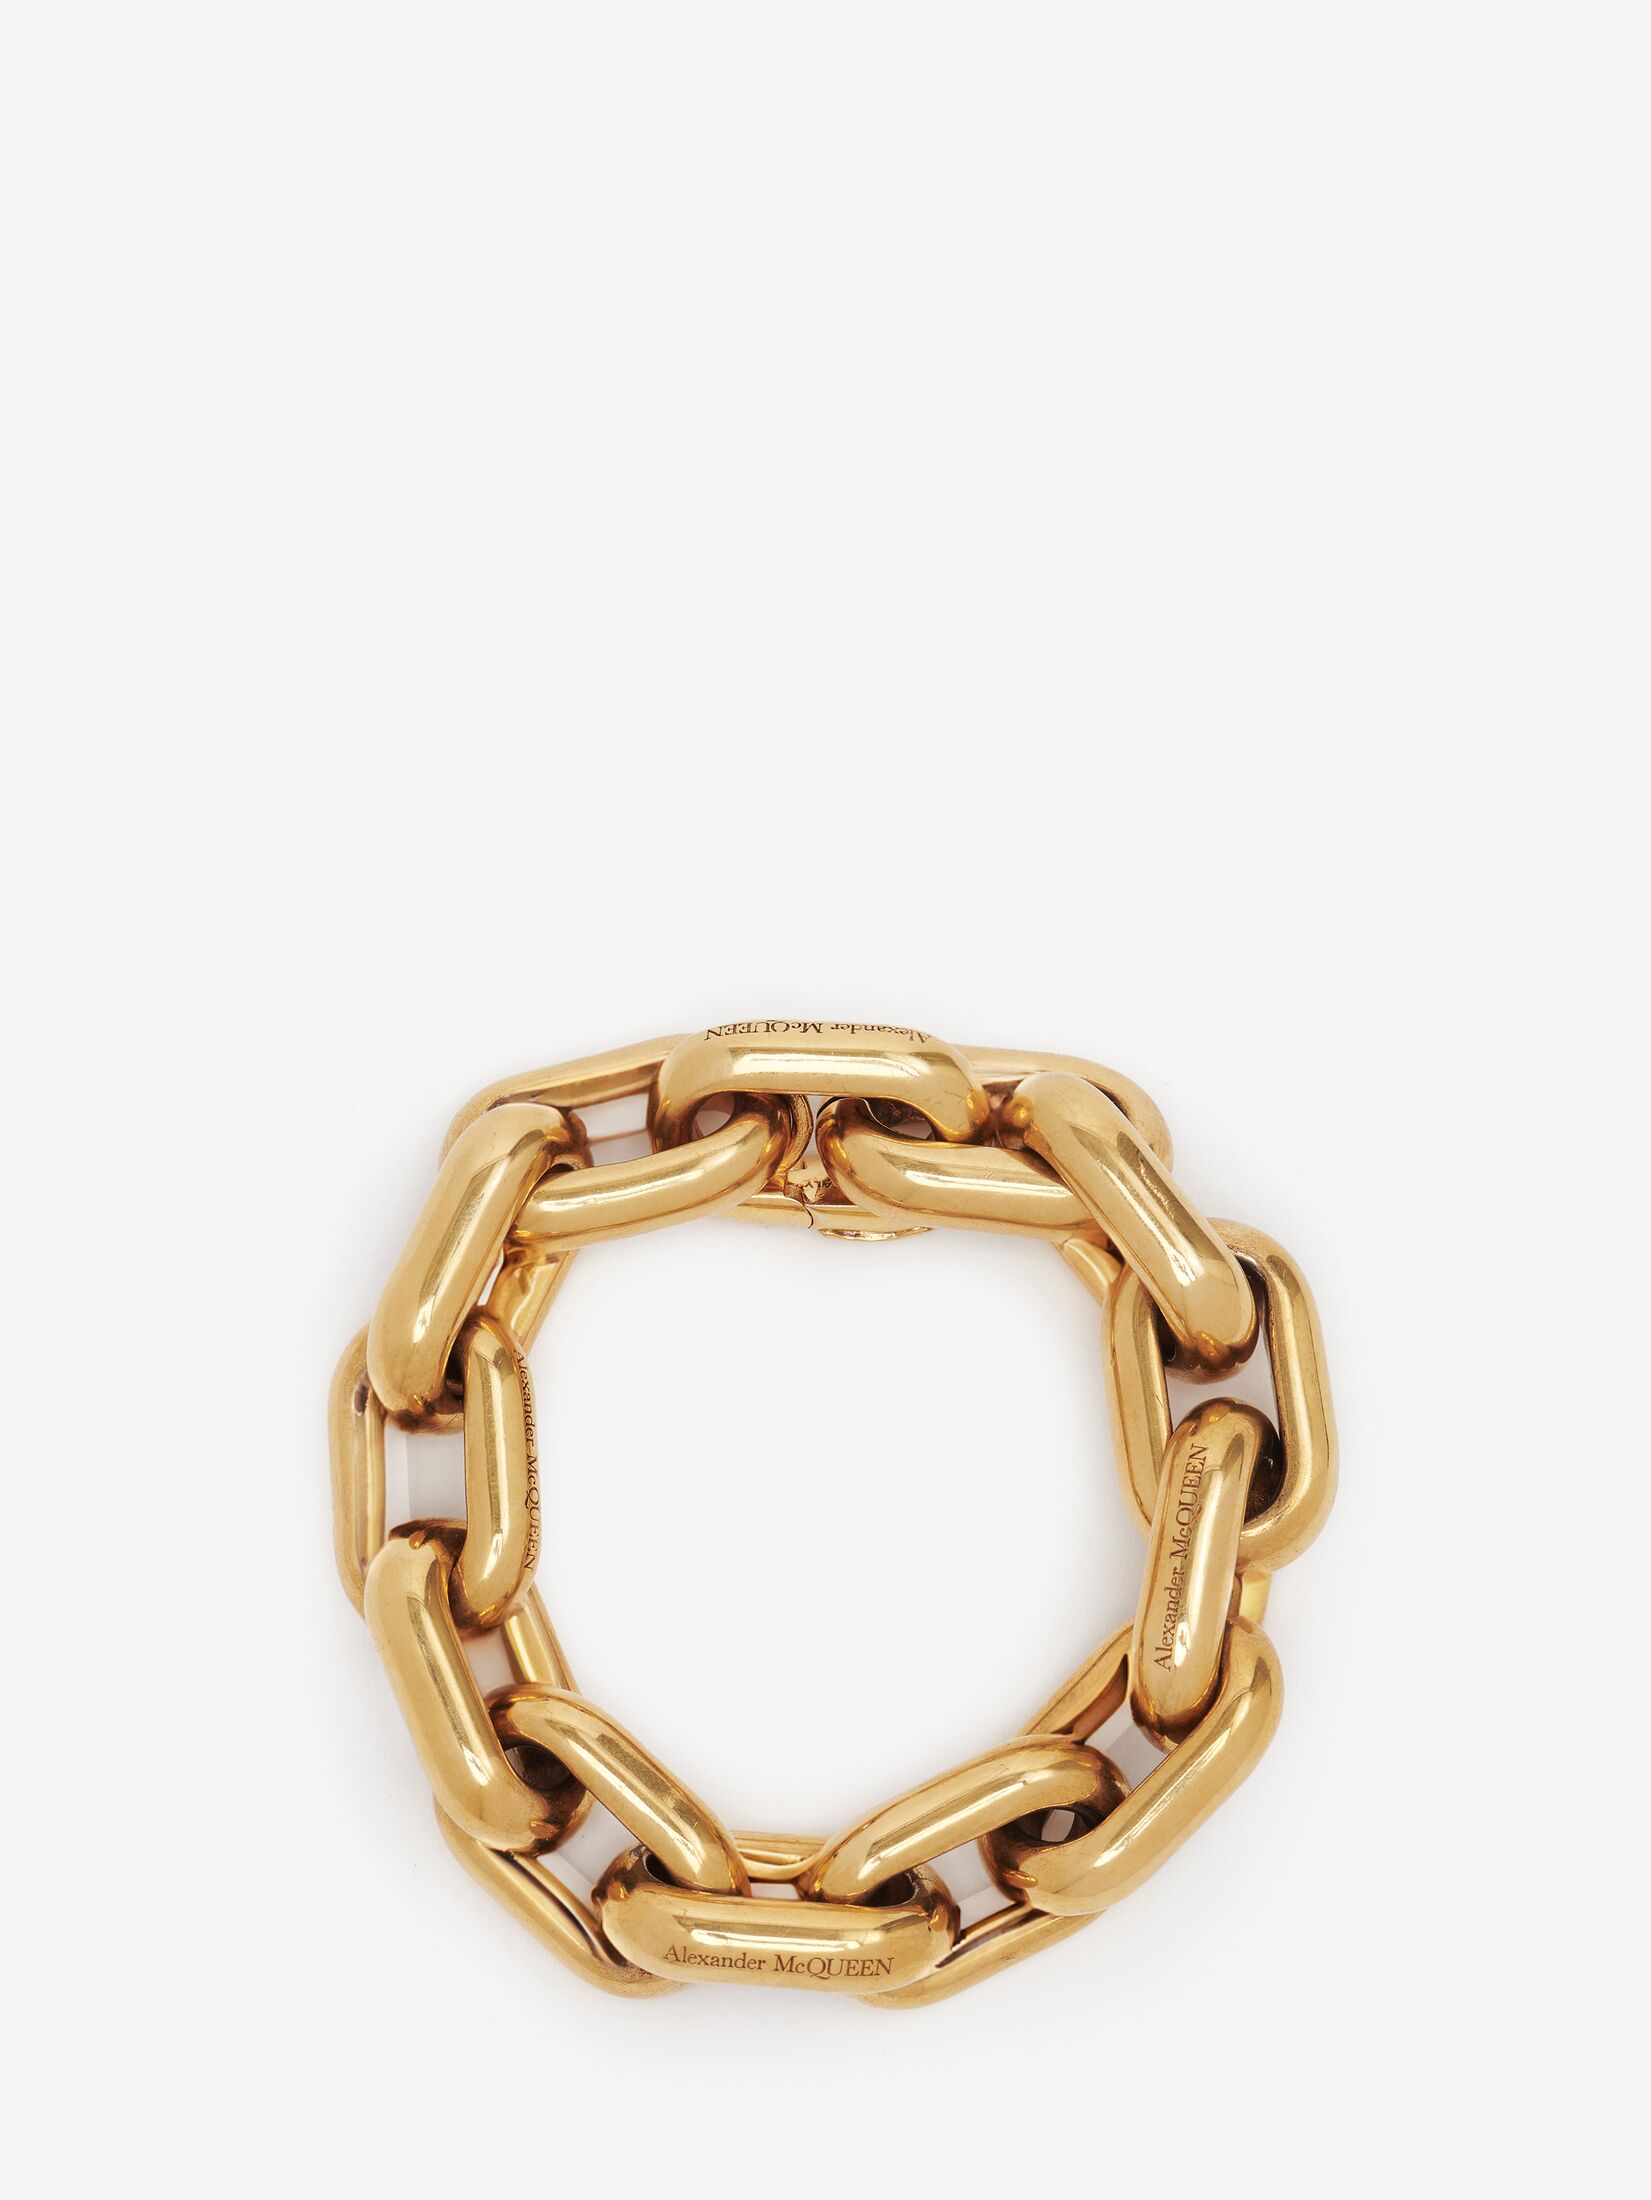 Bracelets & Bangles Alexander Mcqueen - Skull brass detail bracelet -  554600J127I1000